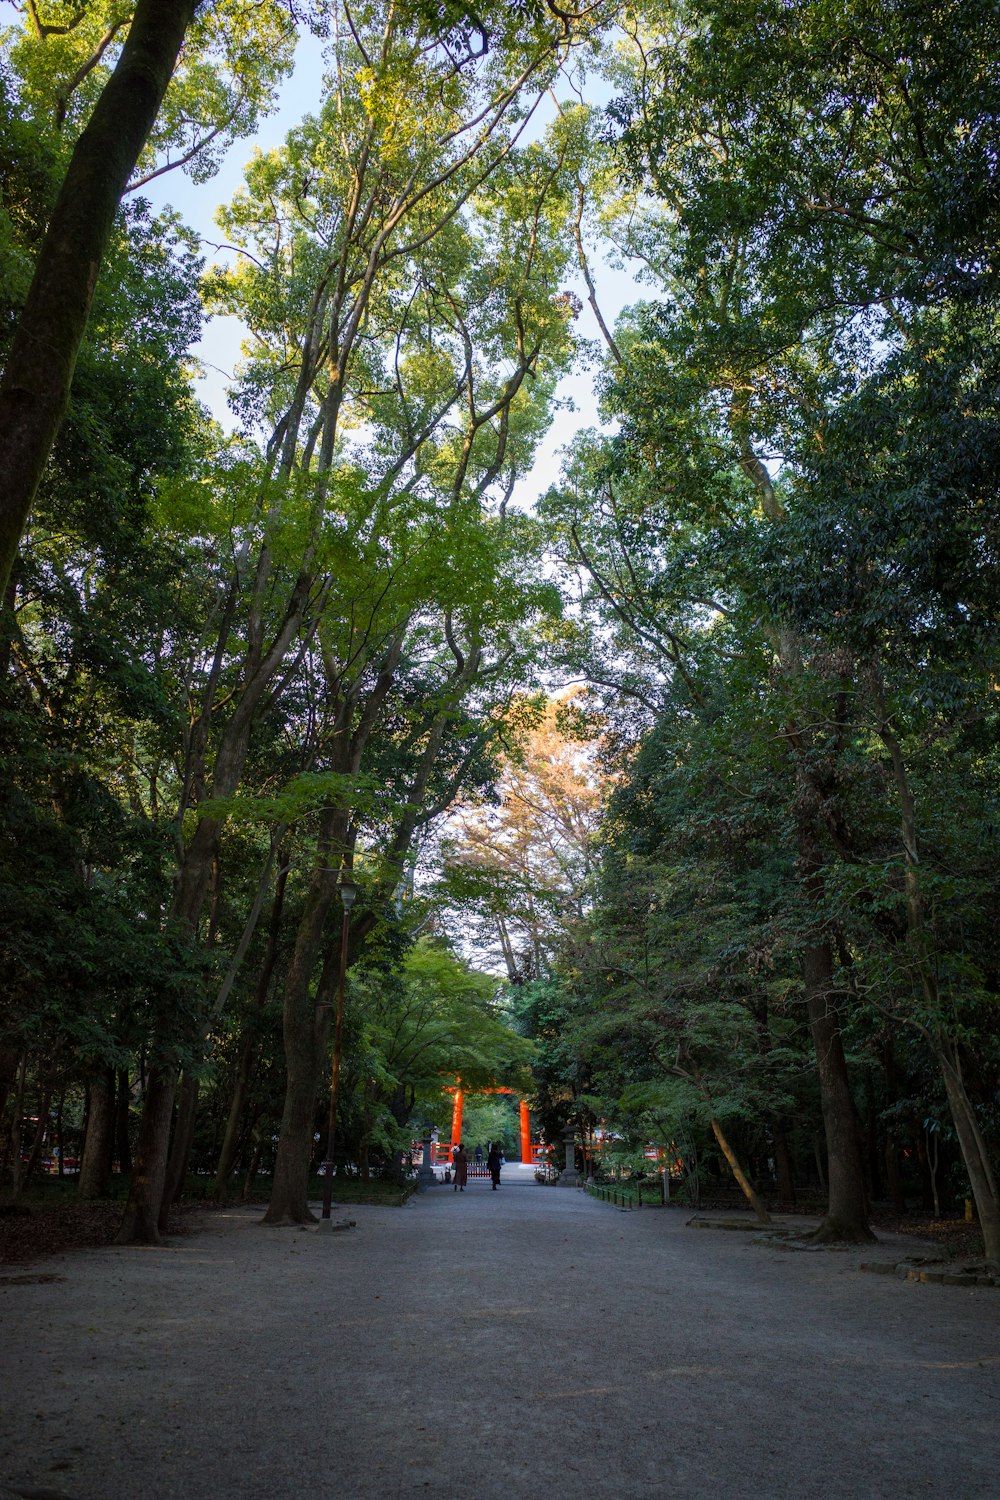 Un grupo de personas caminando por un camino bordeado de árboles